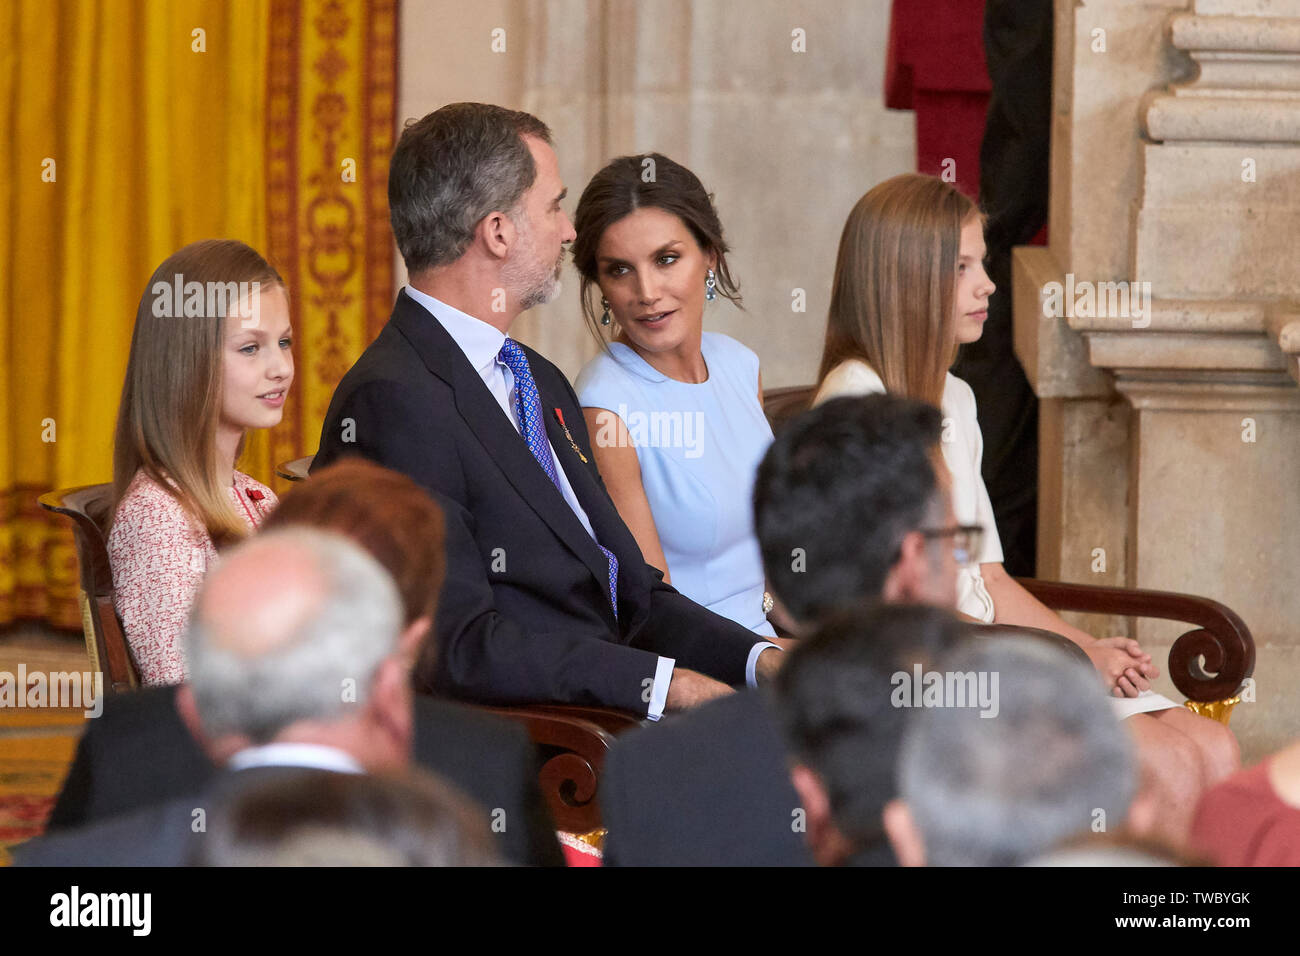 Le roi Felipe VI d'Espagne, la Reine Letizia d'Espagne, la Princesse Leonor et Princess Sofia assister à l'Imposition des décorations de l'Ordre du Mérite Civil au Palais Royal de Madrid. Banque D'Images